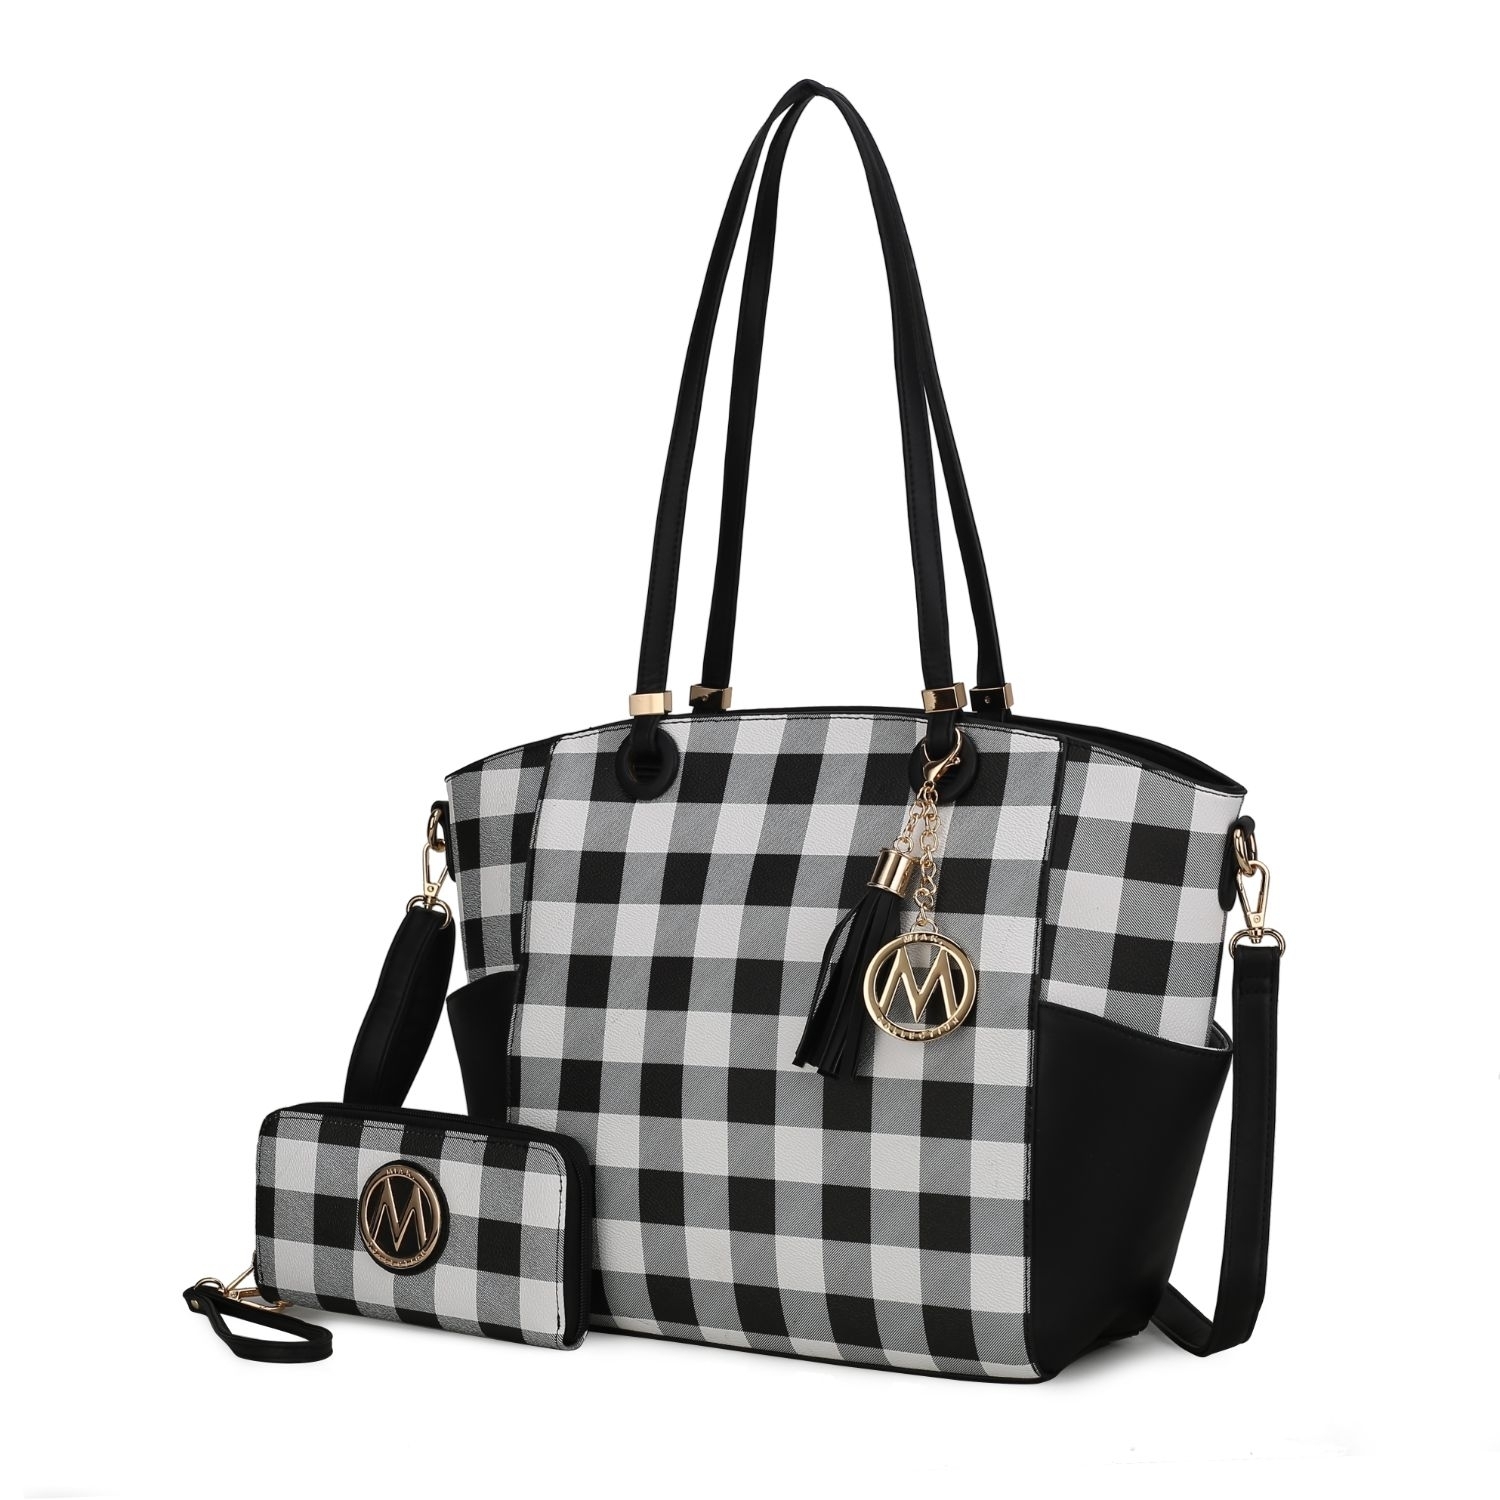 MKF Collection Karlie Tote Handbag With Wallet By Mia K - 2 Pieces - Black